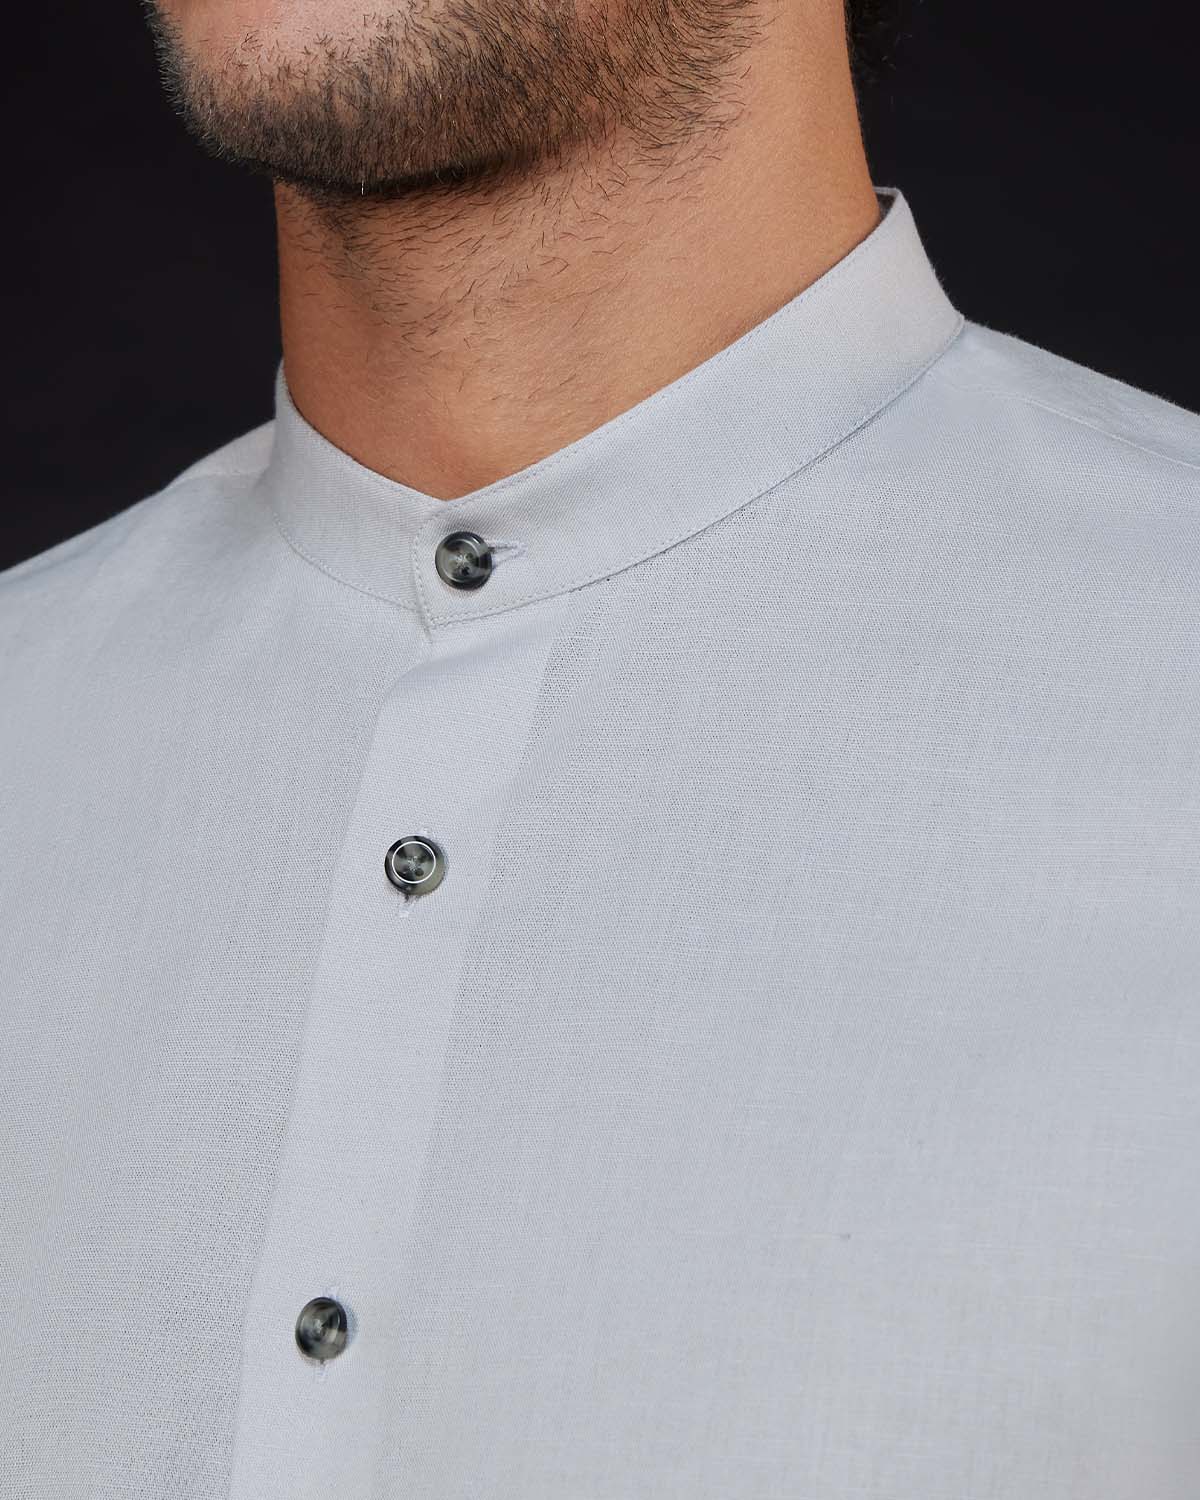 Cotton Linen Shirt - Light Grey